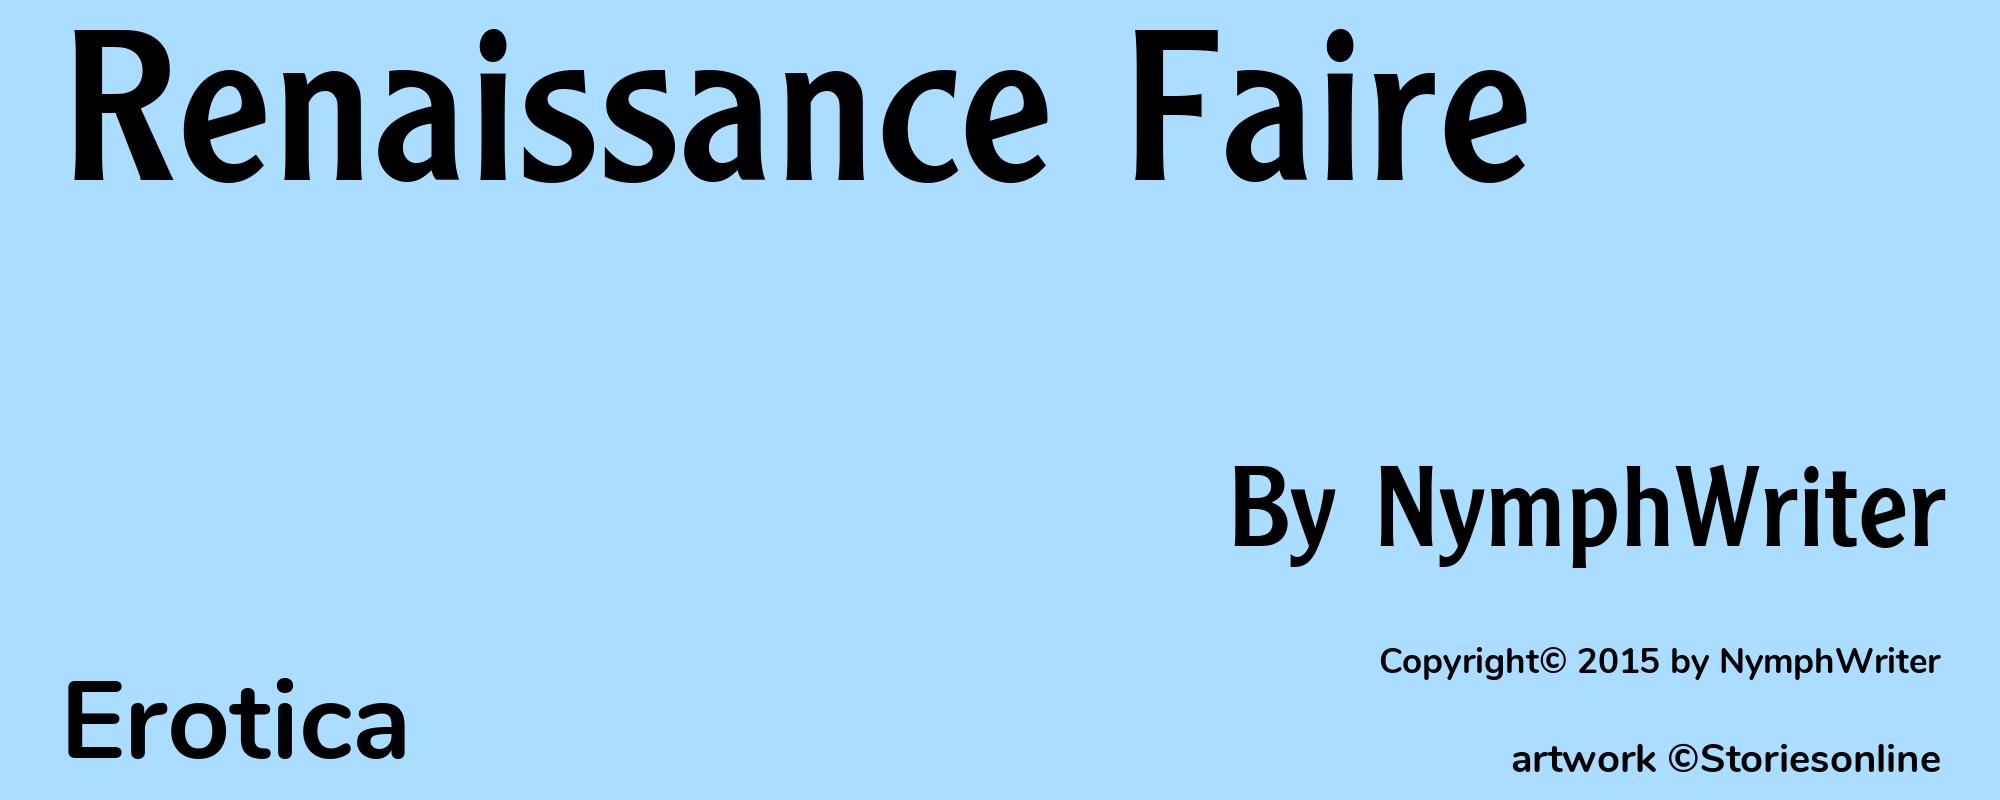 Renaissance Faire - Cover